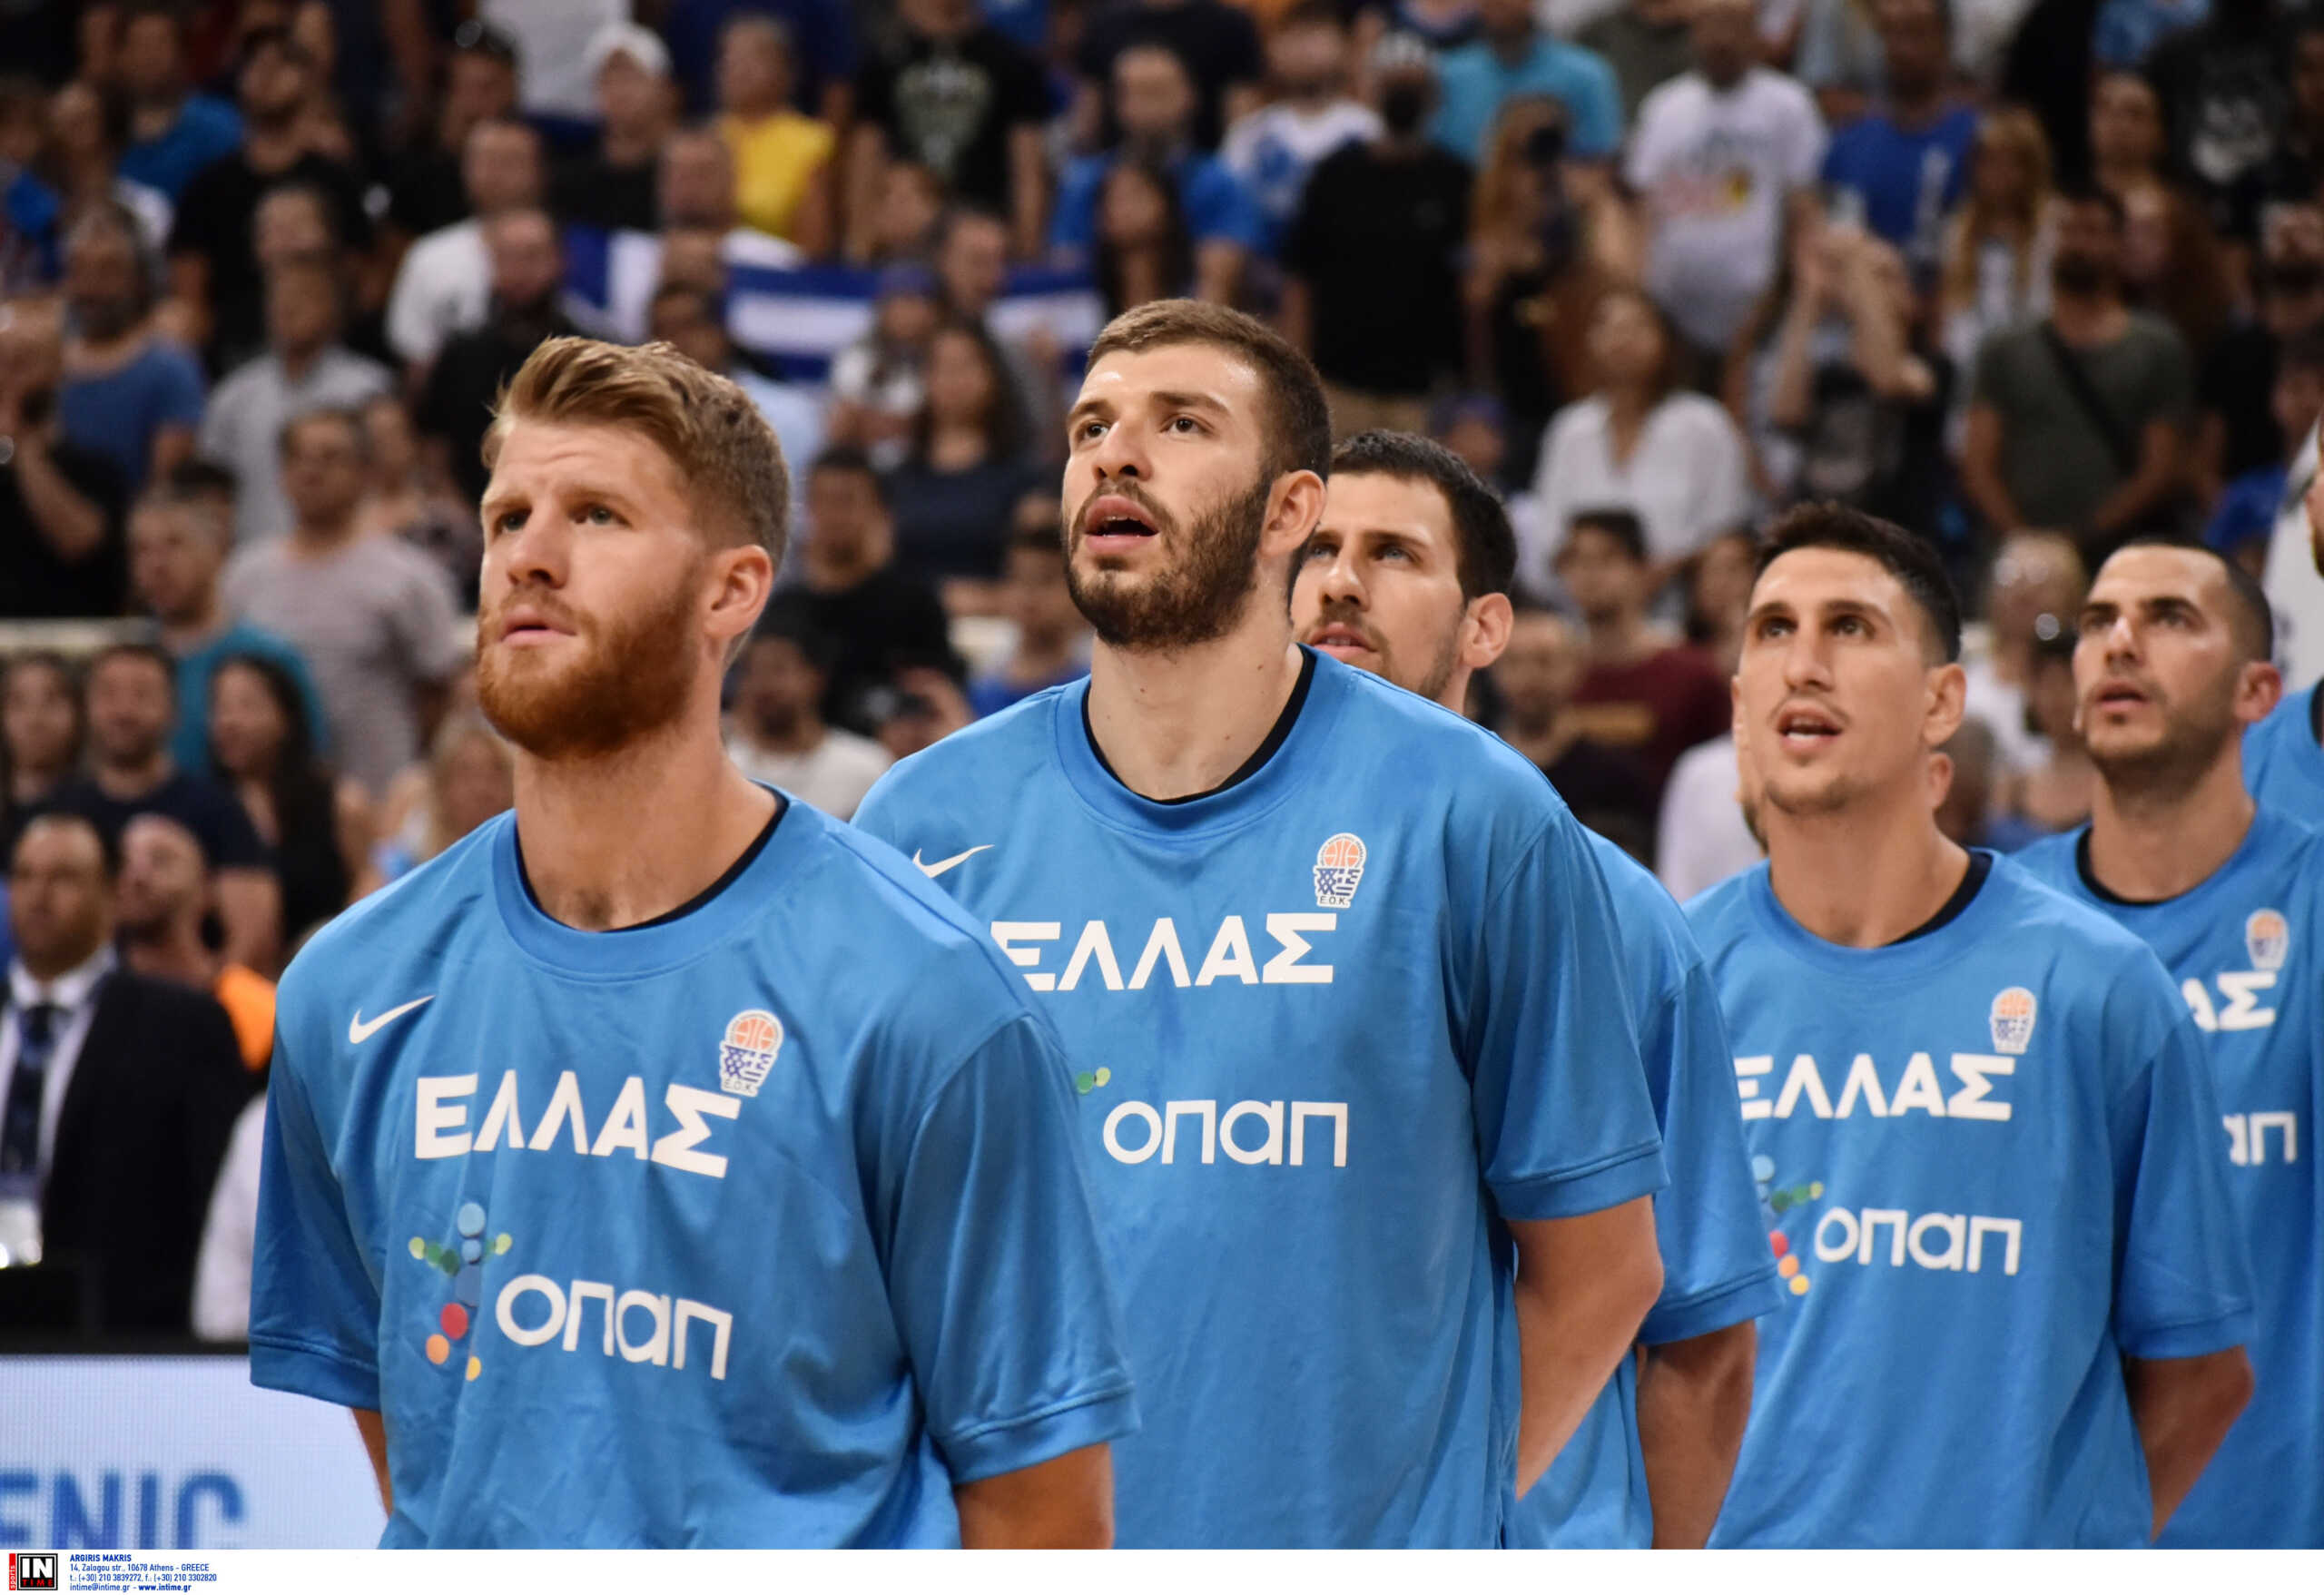 Εθνική Ελλάδας: Το γαλανόλευκο ρόστερ για το Mundobasket 2023 μετά τον τραυματισμό του Μήτογλου